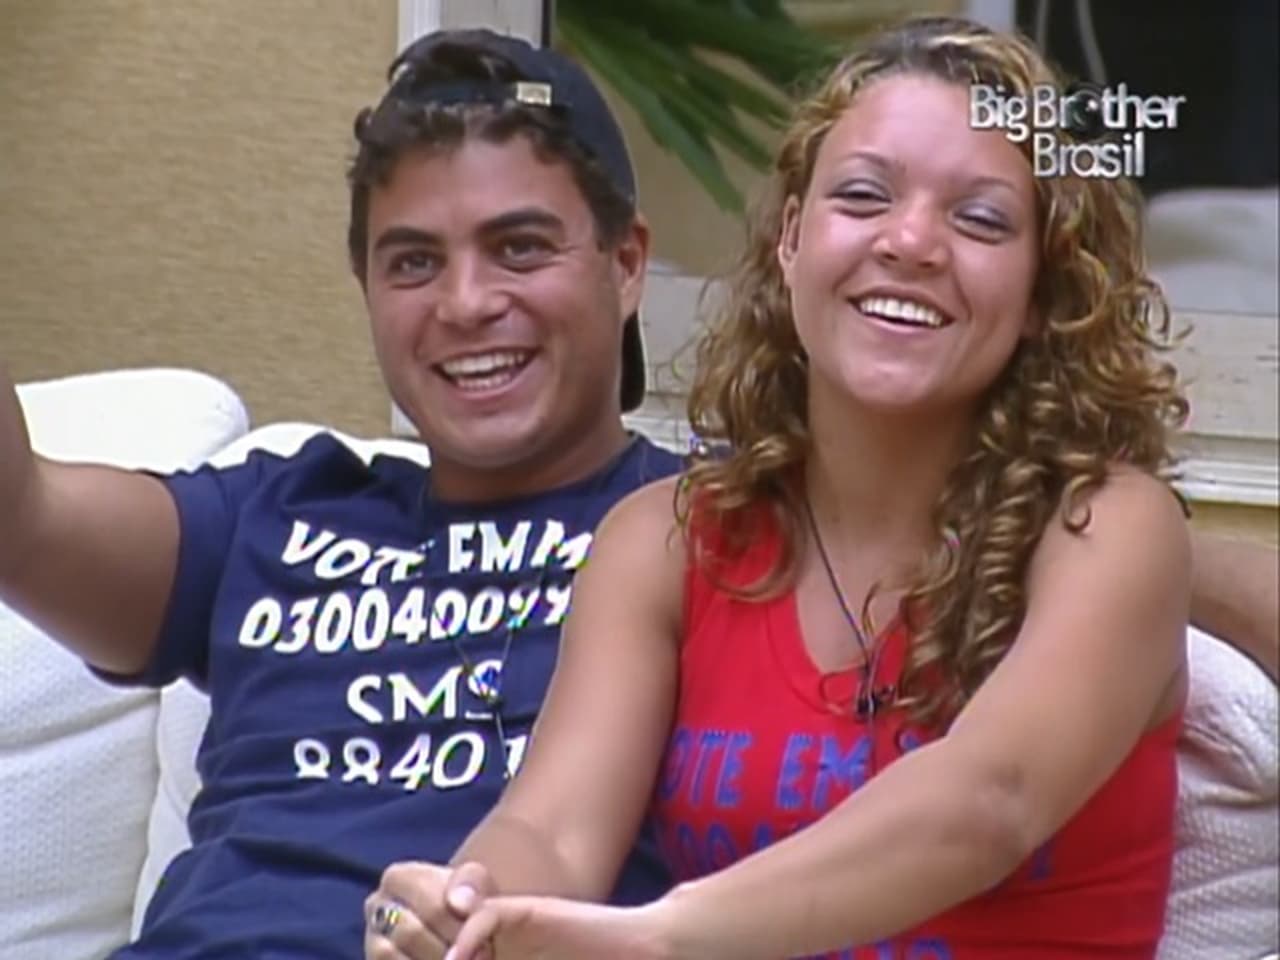 Big Brother Brasil - Season 3 Episode 77 : Episode 77